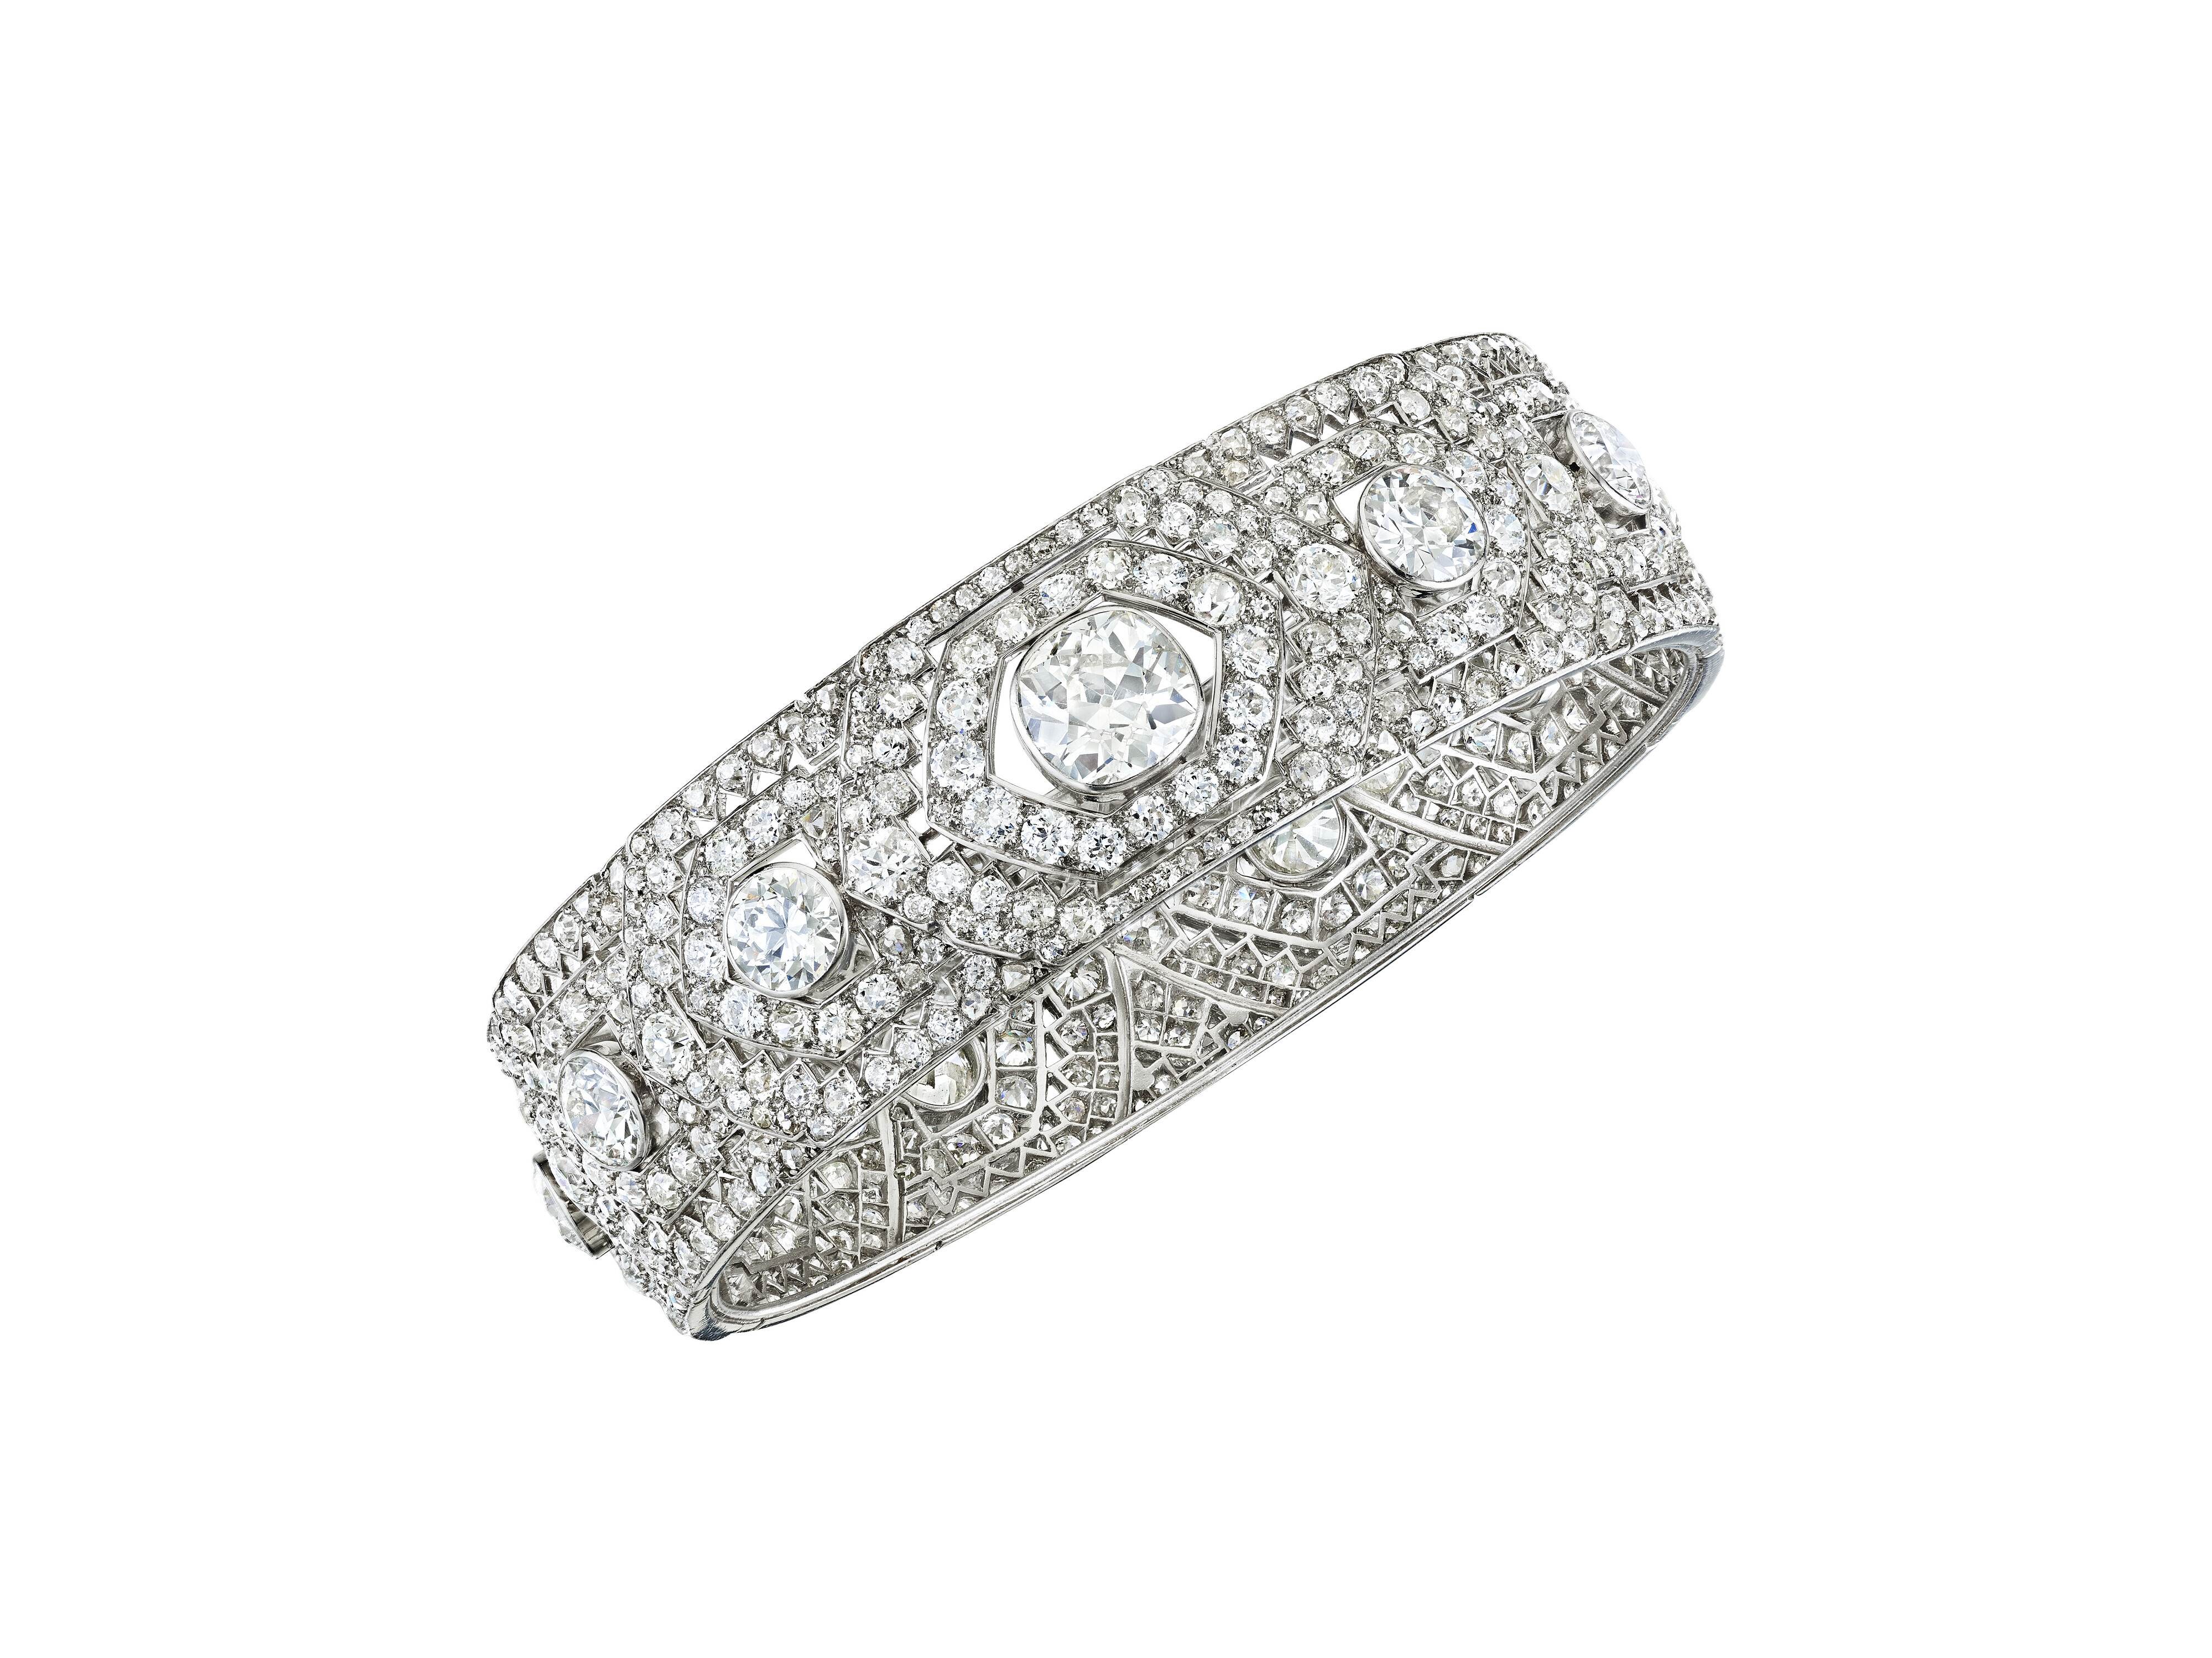 Cartier firma este brazalete estilo Art Decó constelado de pequeños diamantes. Precio de salida entre 150.000 y 250.000 euros. - imagen 1